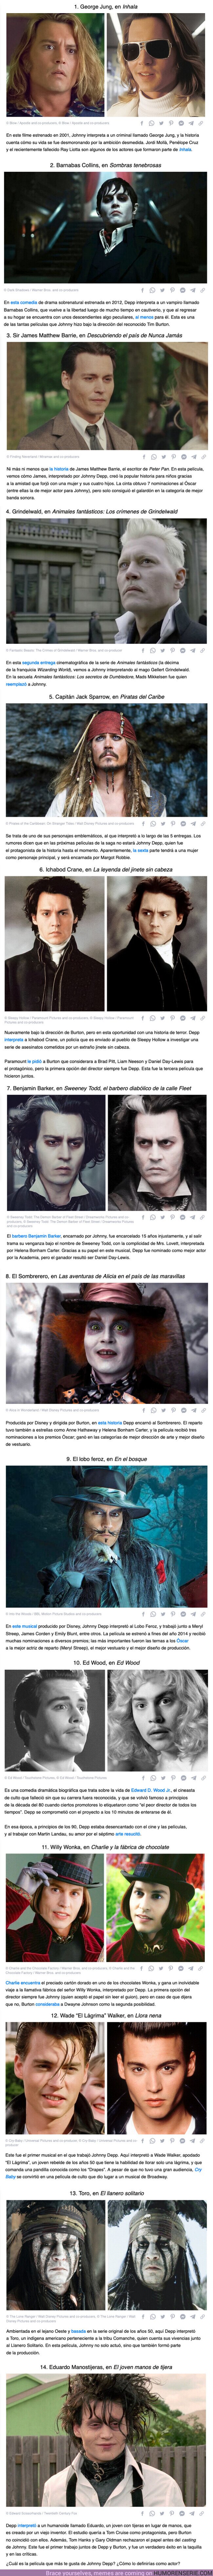 101593 - GALERÍA: 14 Papeles en los que Johnny Depp dejó su huella artística impregnada